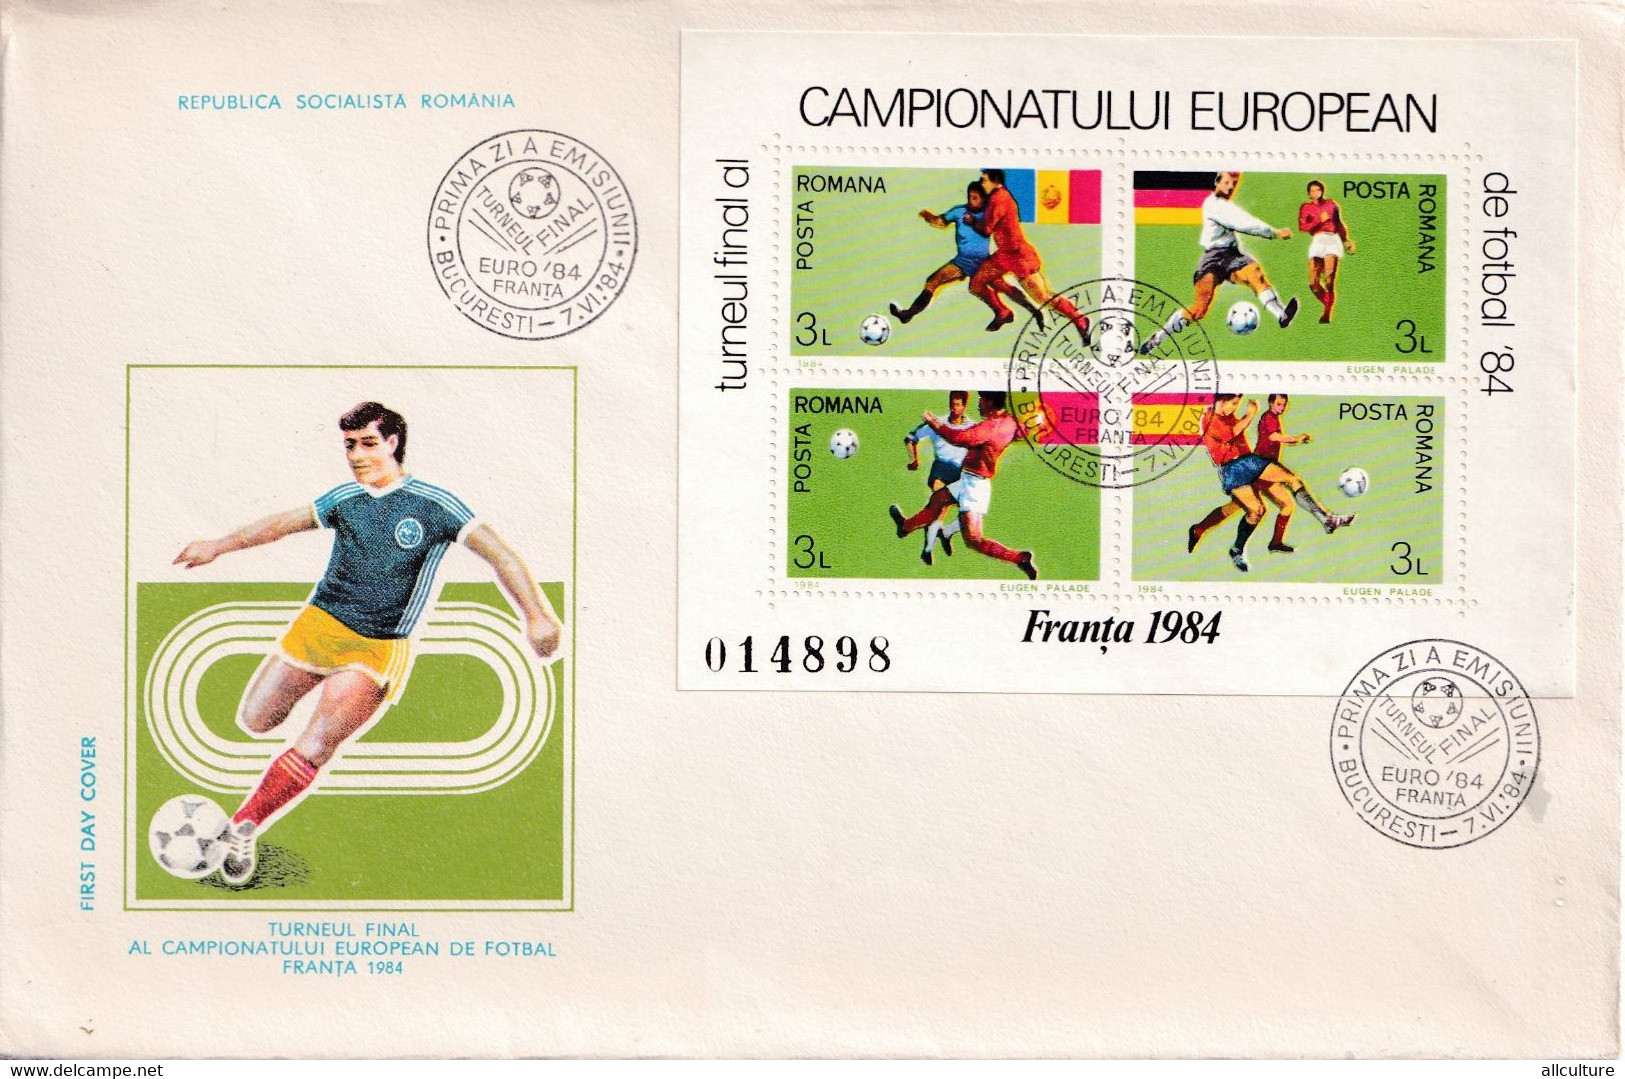 A2777- Turneul Final Campionatul European De Fotbal Franta 1984, Republica Socialista Romania, Bucuresti  1980  FDC - FDC